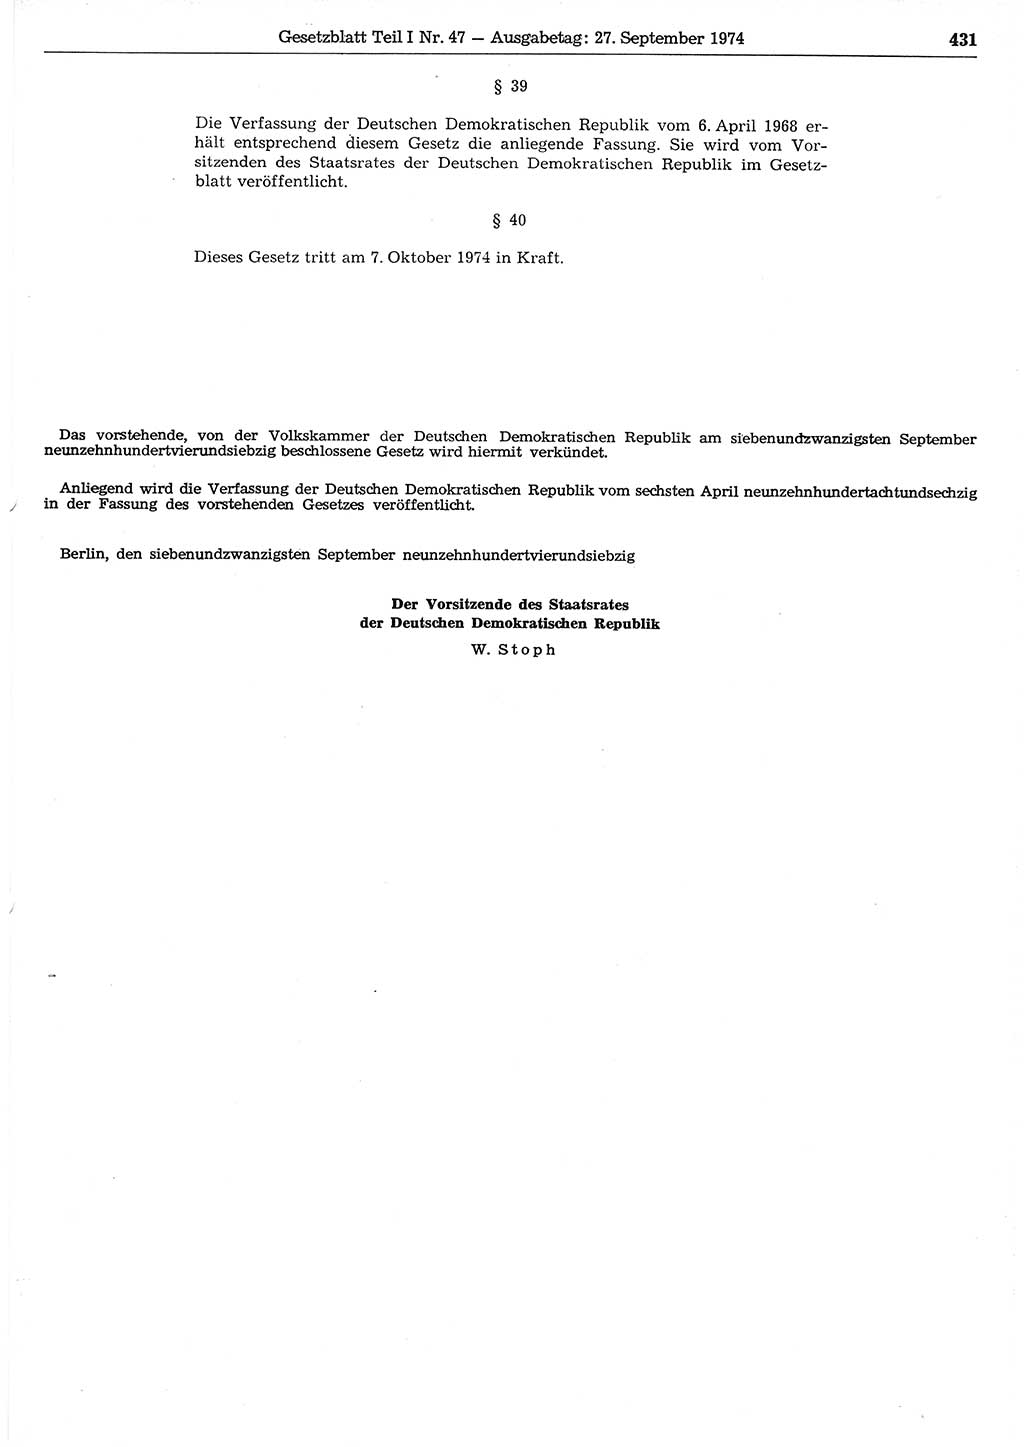 Gesetzblatt (GBl.) der Deutschen Demokratischen Republik (DDR) Teil Ⅰ 1974, Seite 431 (GBl. DDR Ⅰ 1974, S. 431)